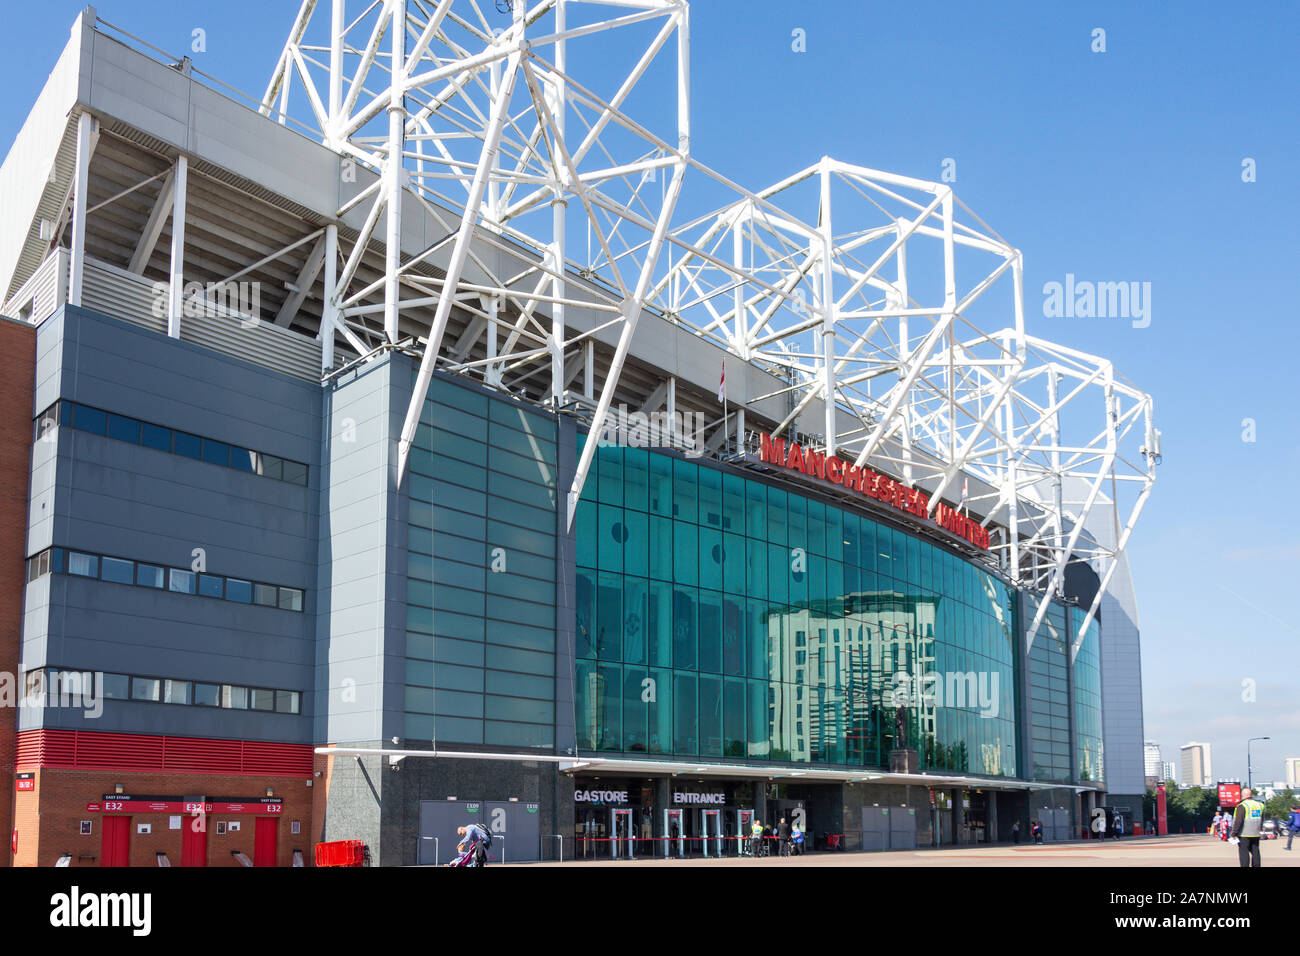 Haupteingang zum Manchester United Football Ground, Old Trafford Sir Matt Busby Way, Stretford, Trafford, Greater Manchester, England, Vereinigtes Königreich Stockfoto